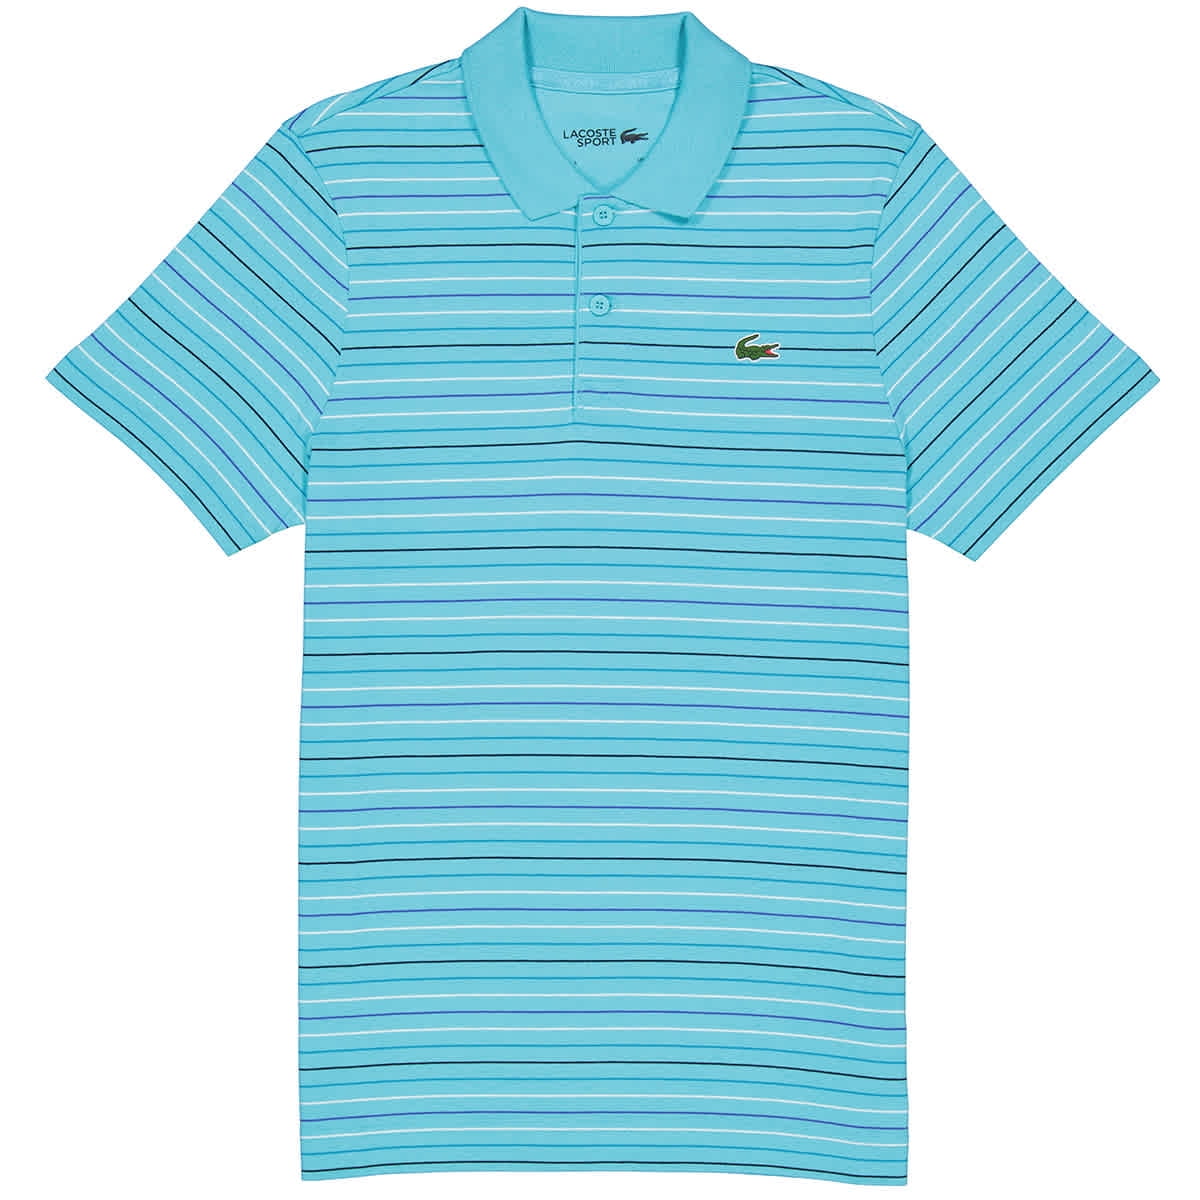 Lacoste Men's Blue/White Cotton Jersey Stripe Polo Shirt, 3 Walmart.com